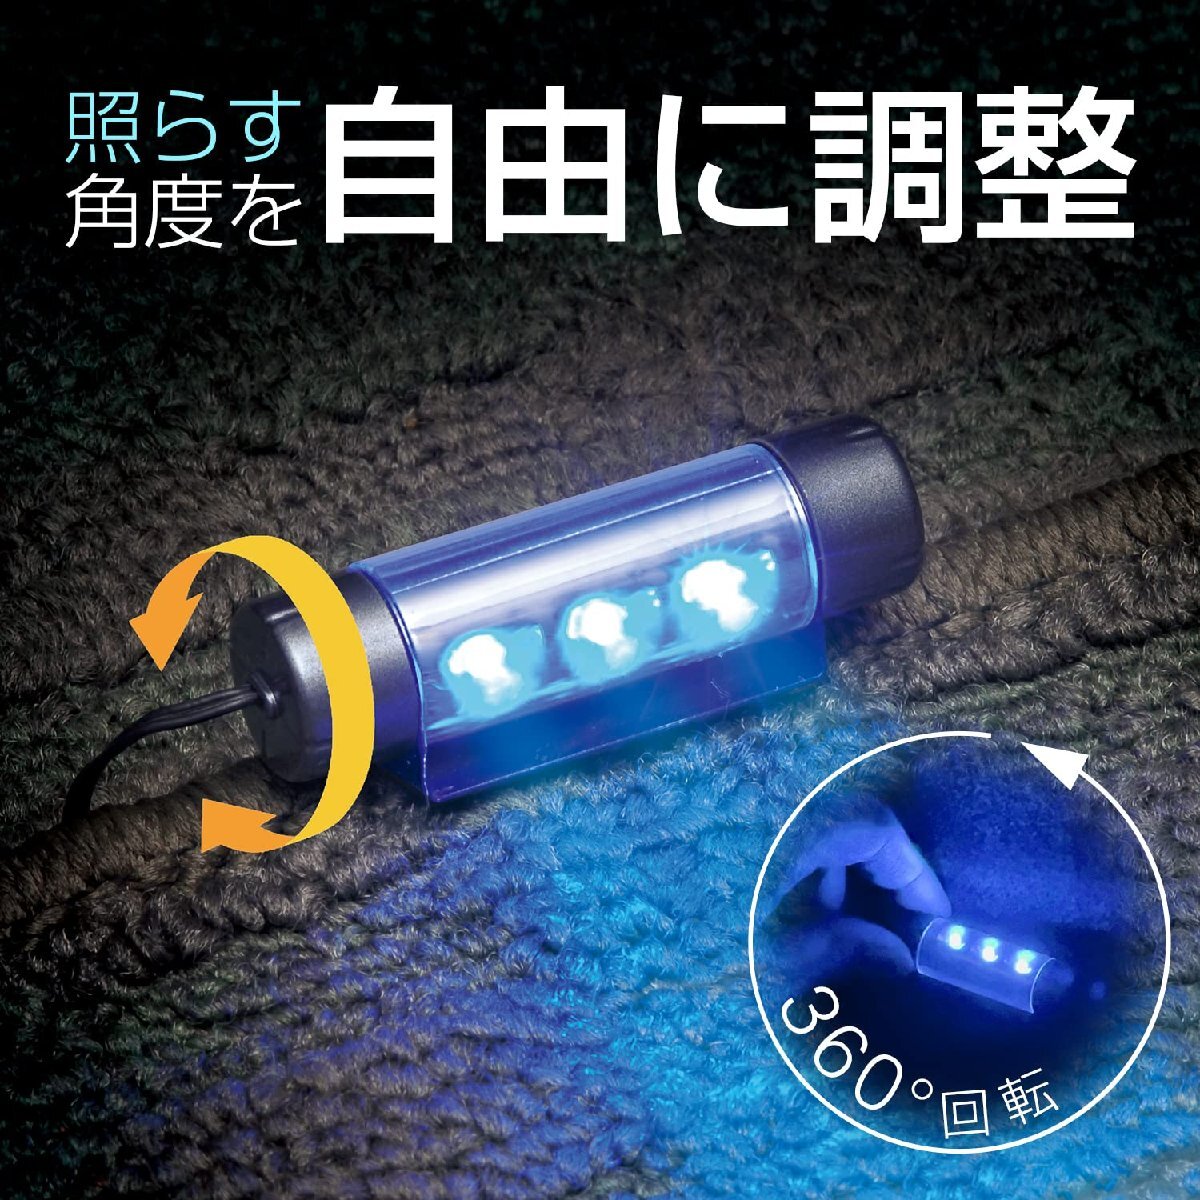 セイワ(SEIWA) 車内用品 USBフロアライト4連タイプ イルミネーション USB電源 F335 高輝度ブルーLED使用 照射角度調整可能 光量_画像4